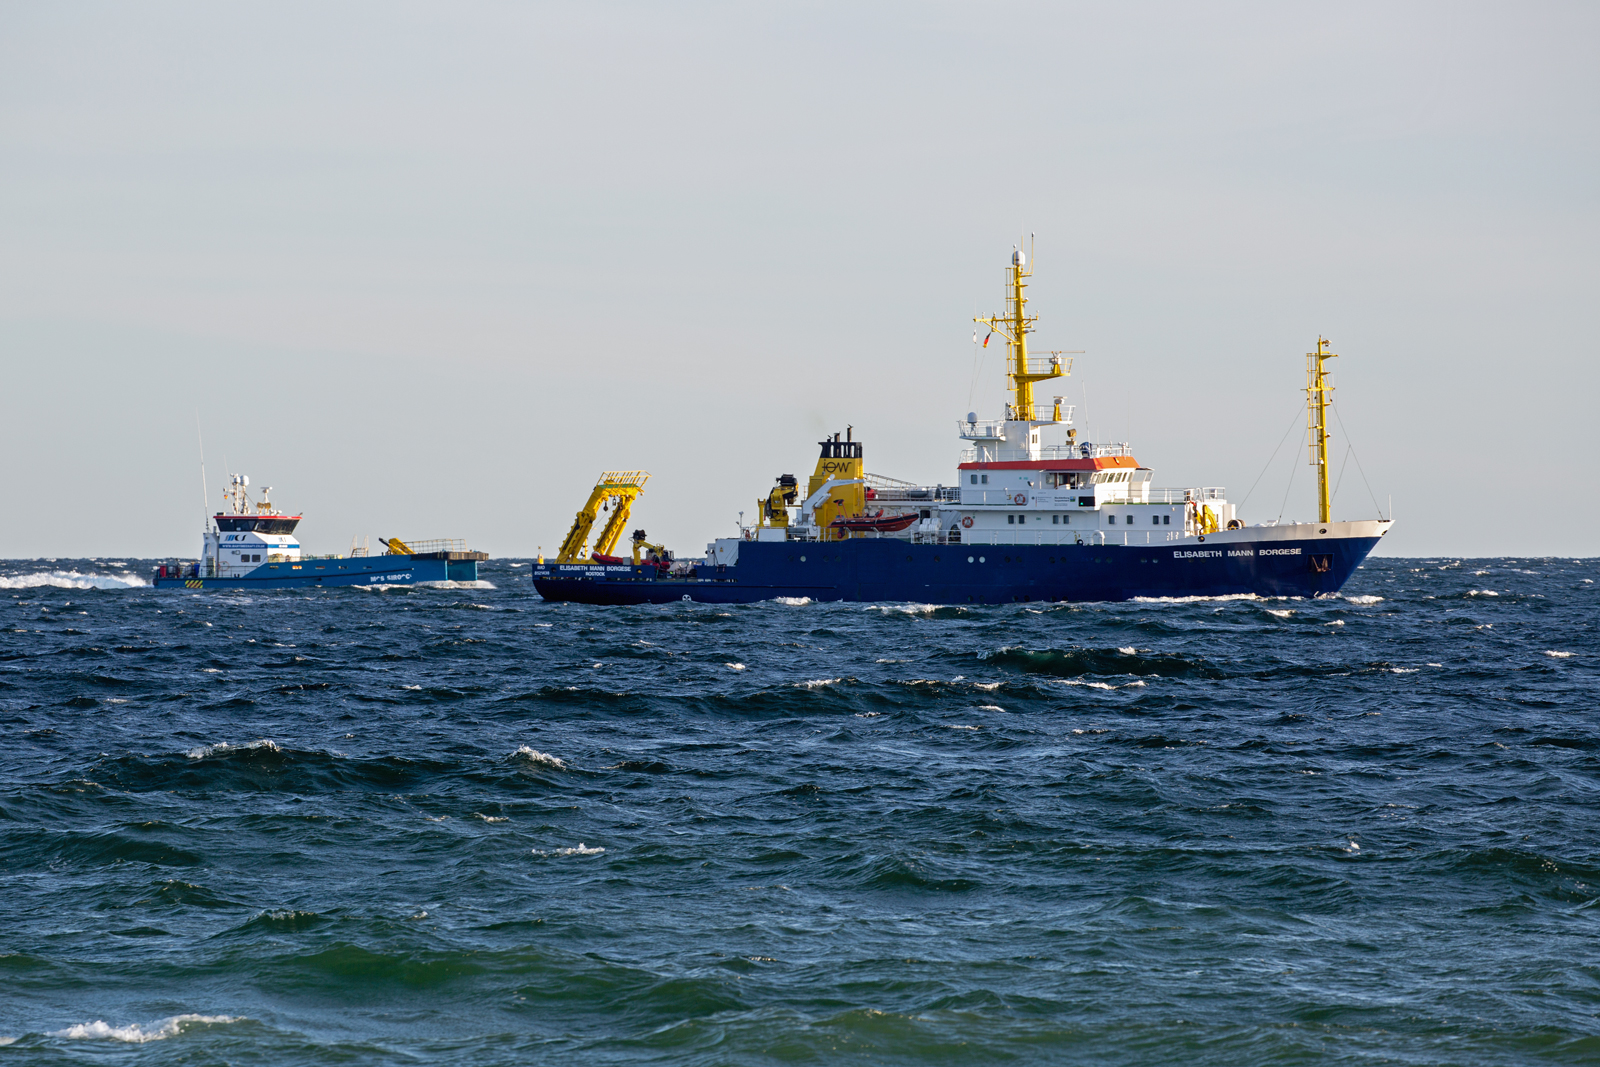 Forschungsschiff ELISABETH MANN BORGESE (IMO 8521438) und MCS SIROCCO (IMO 9643764) vor Rügen. - 20.10.2022 